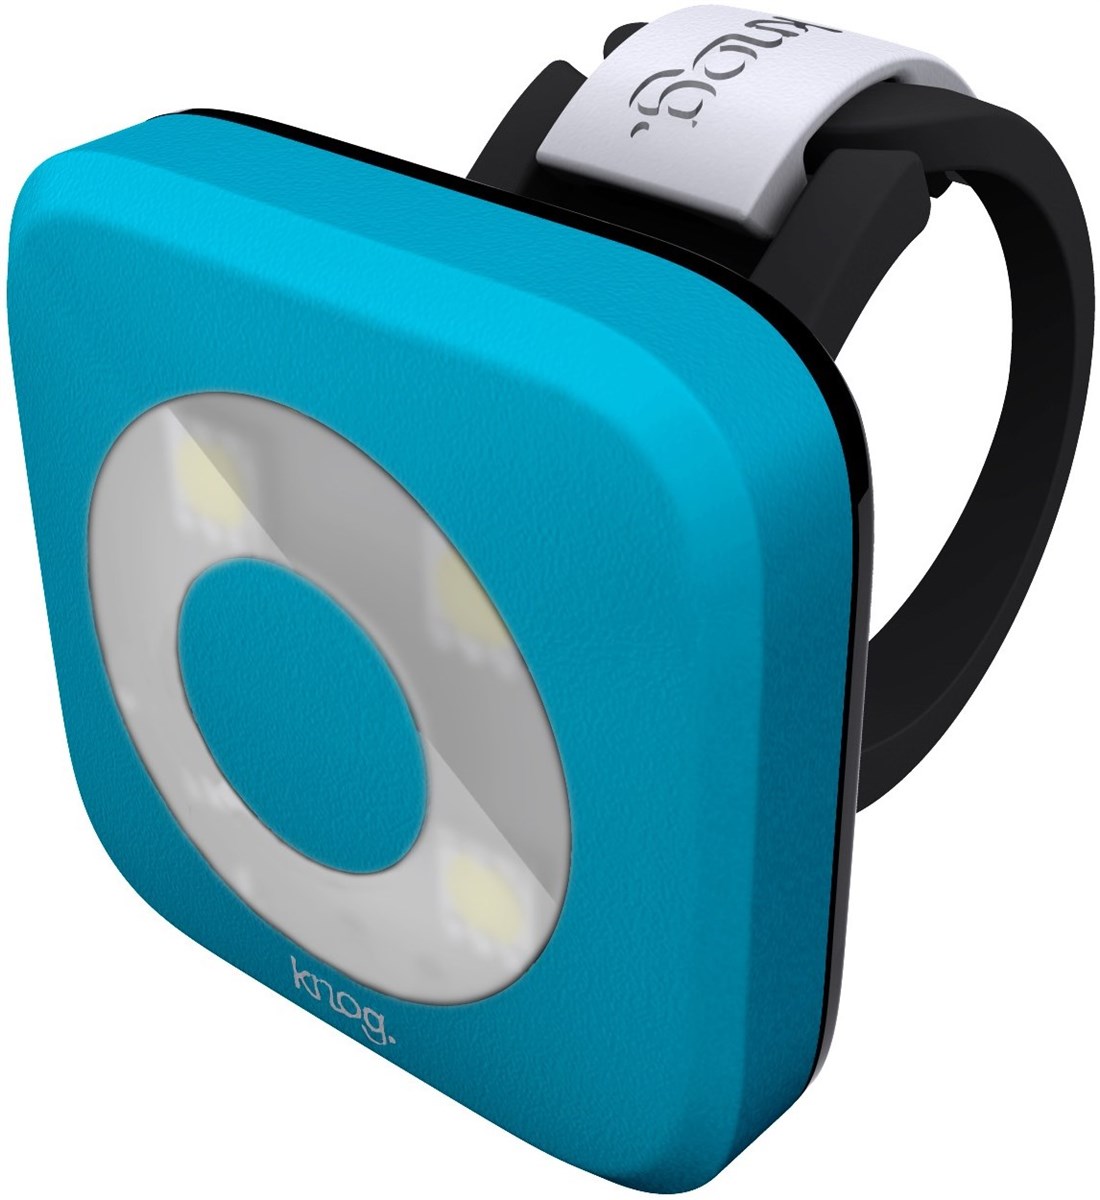 Knog Blinder 4 LED O USB Rechargeable Front Light product image